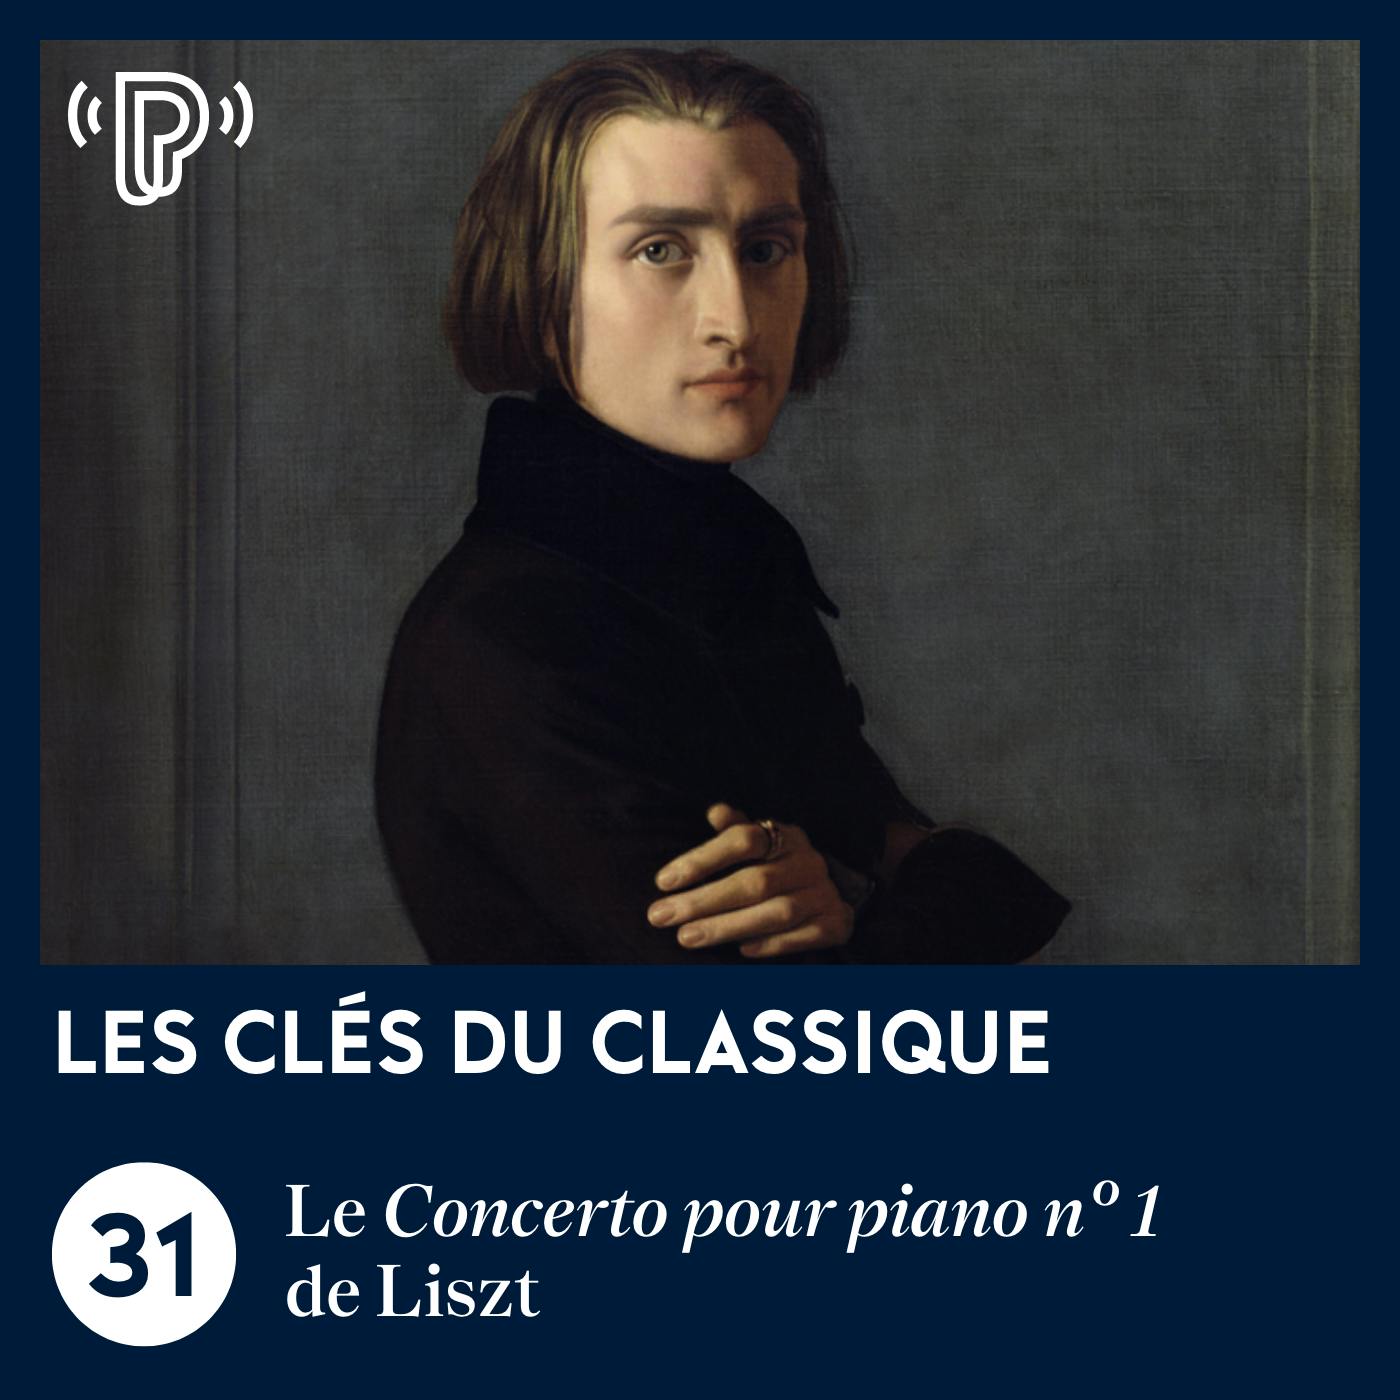 Le Concerto pour piano n° 1 de Liszt | Les Clés du classique #31